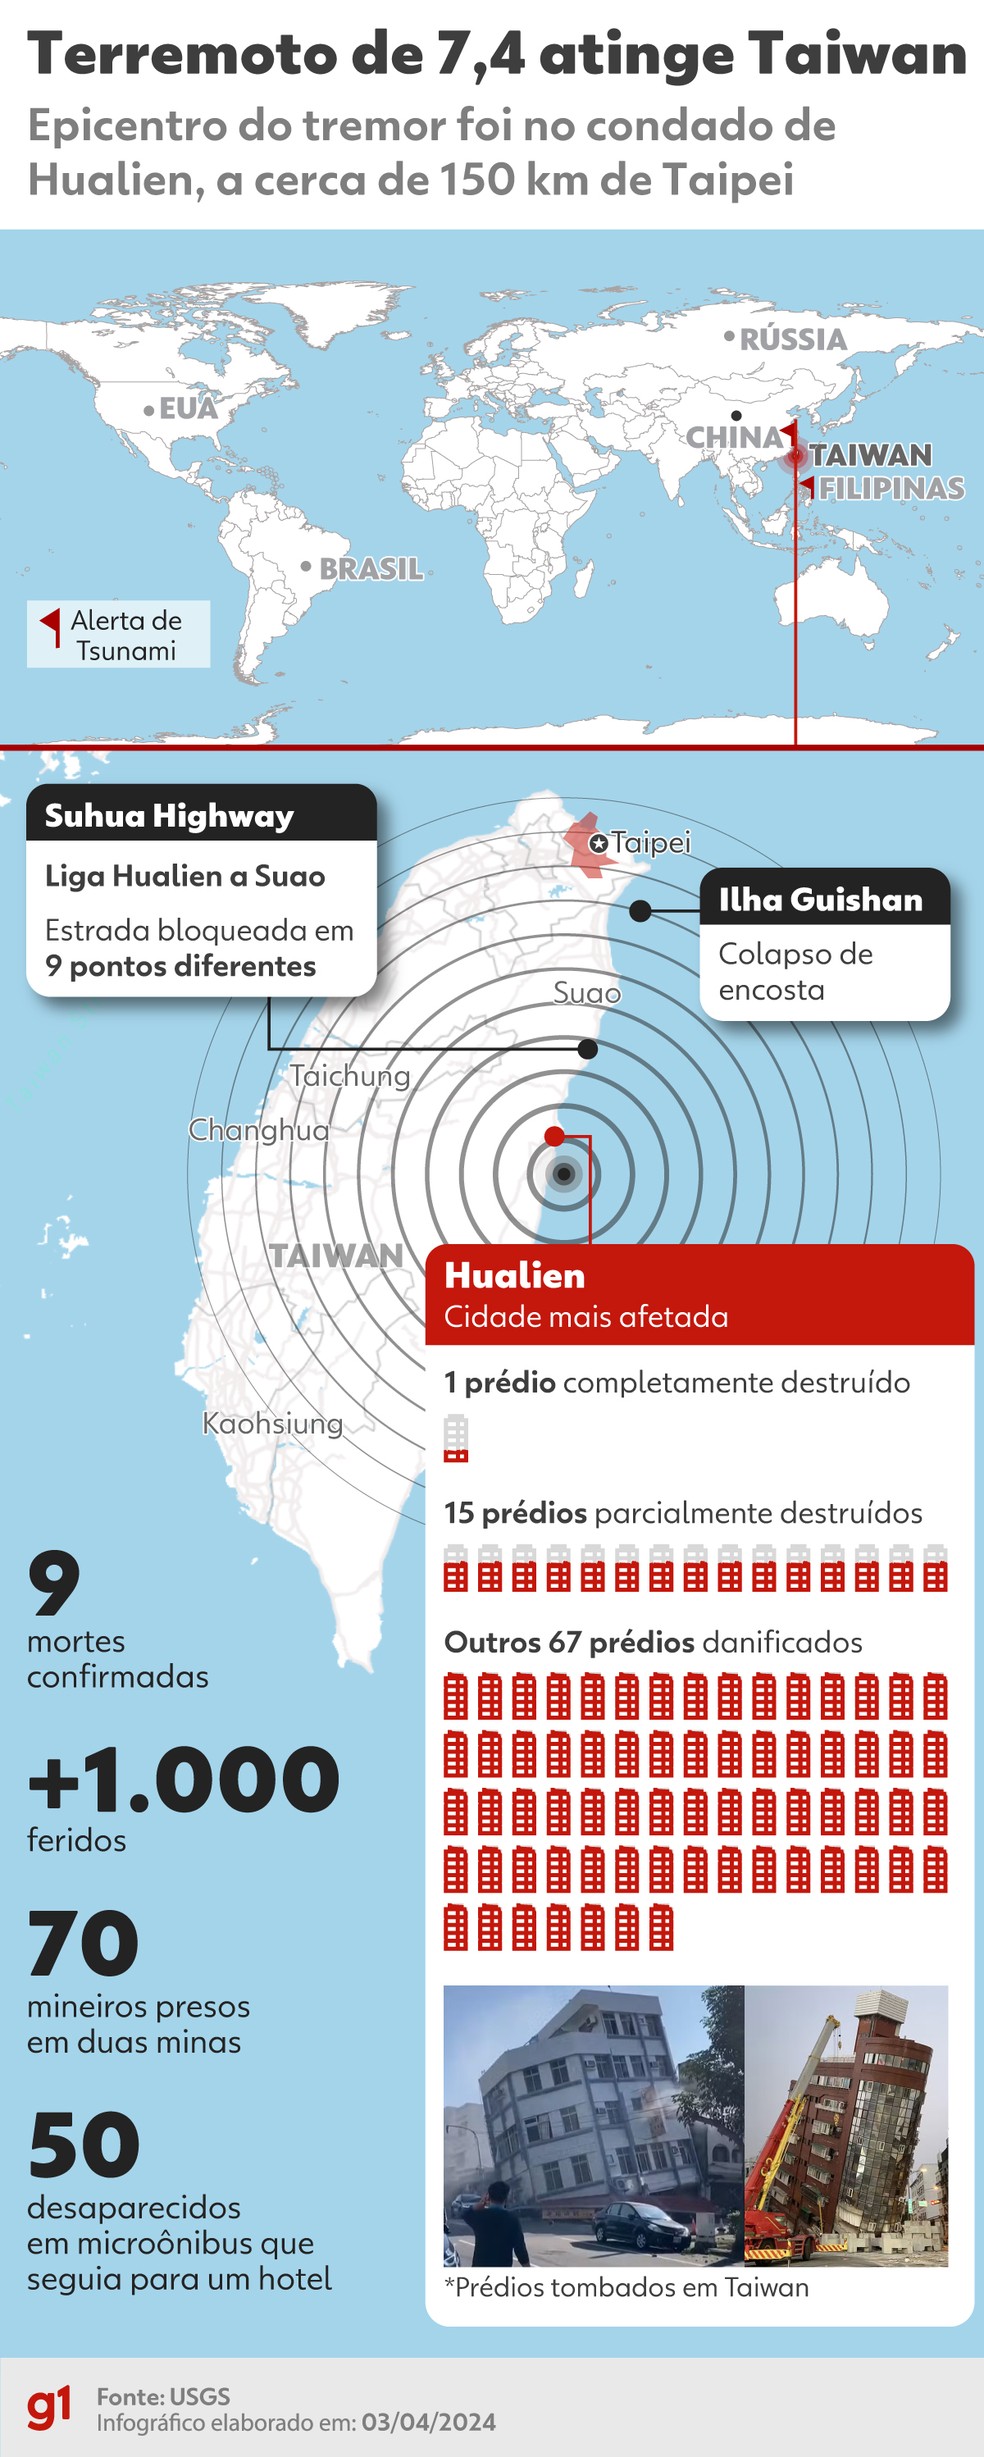 Infográfico mostra epicentro do terremoto que atingiu Taiwan e o leste da Ásia, mortos, feridos e prédios afetados. — Foto: Gabs e Wagner Magalhães/g1